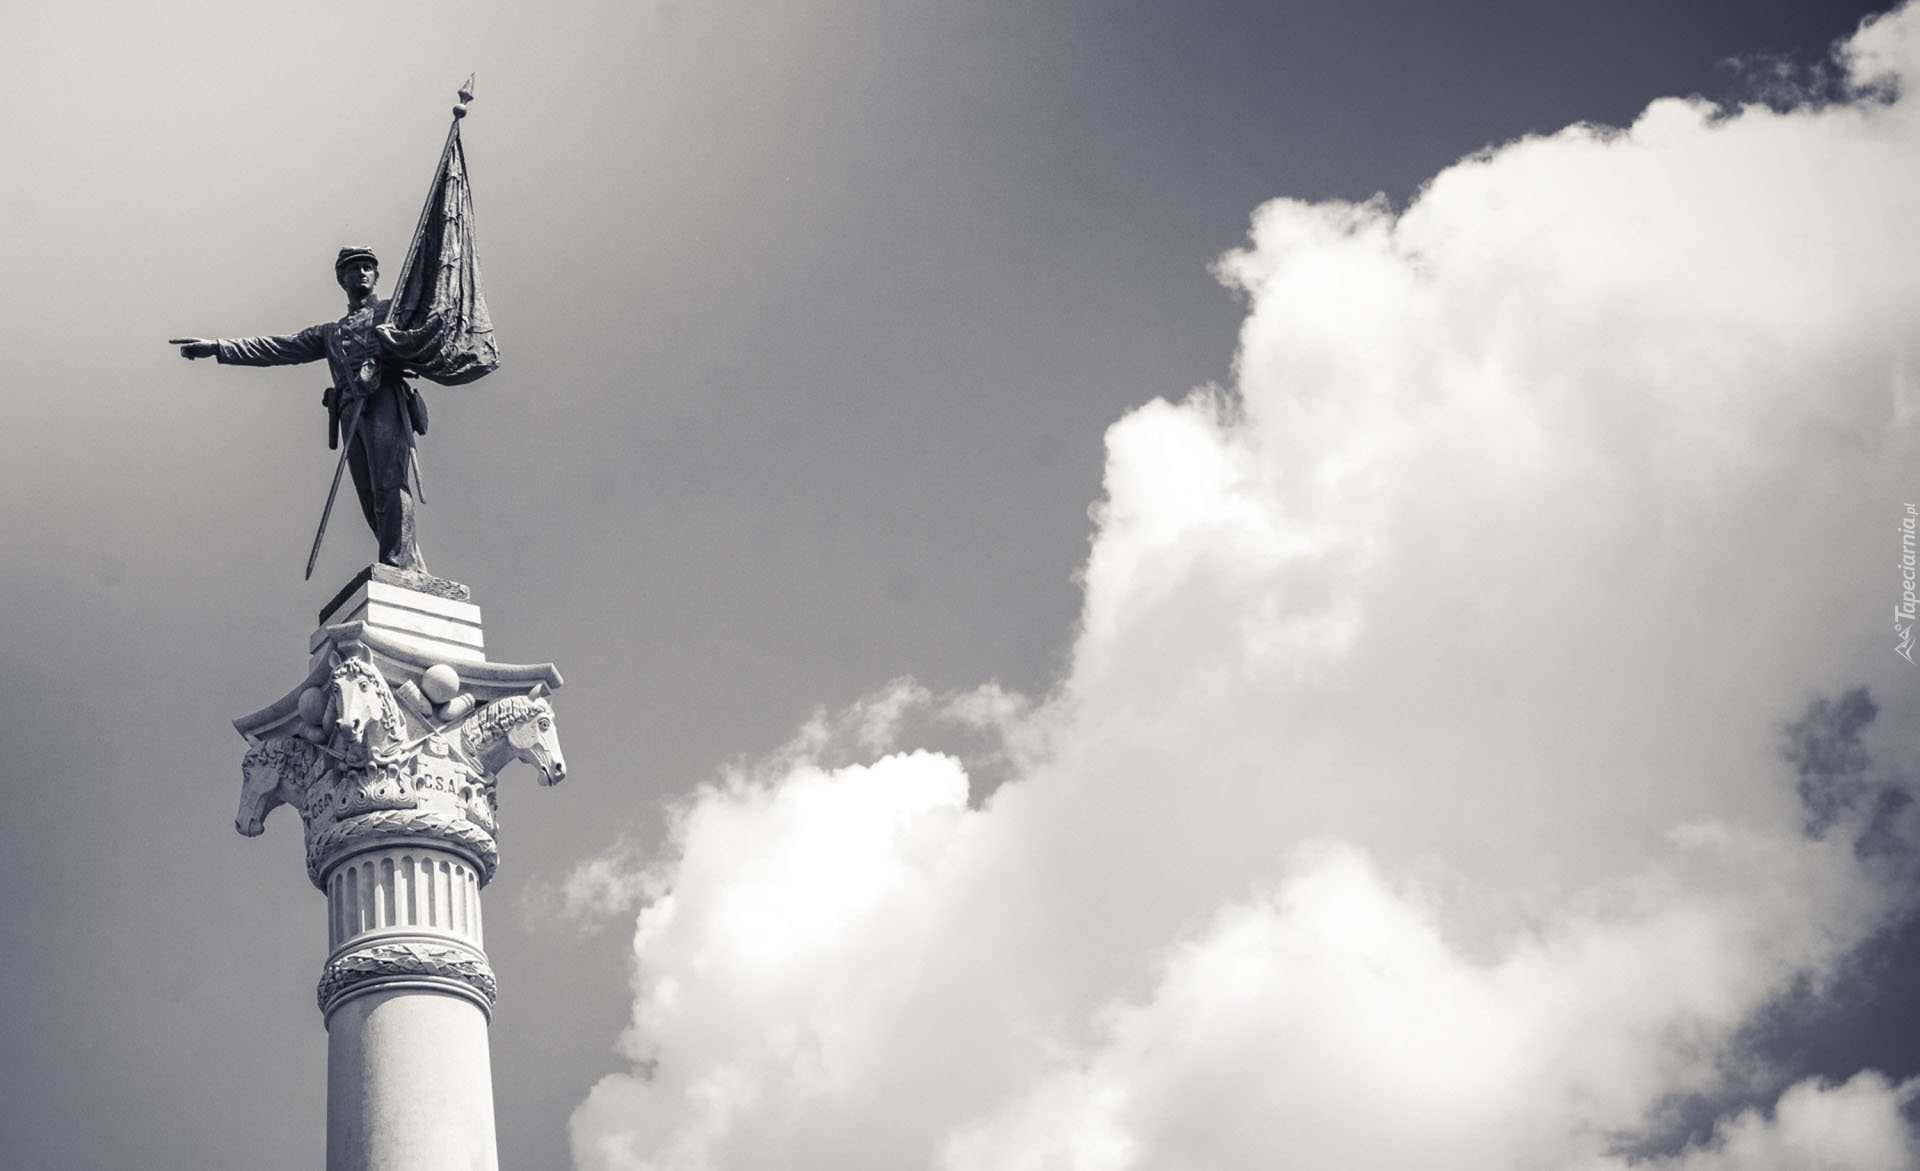 Kolumna, Pomnik, Posąg, Chmury